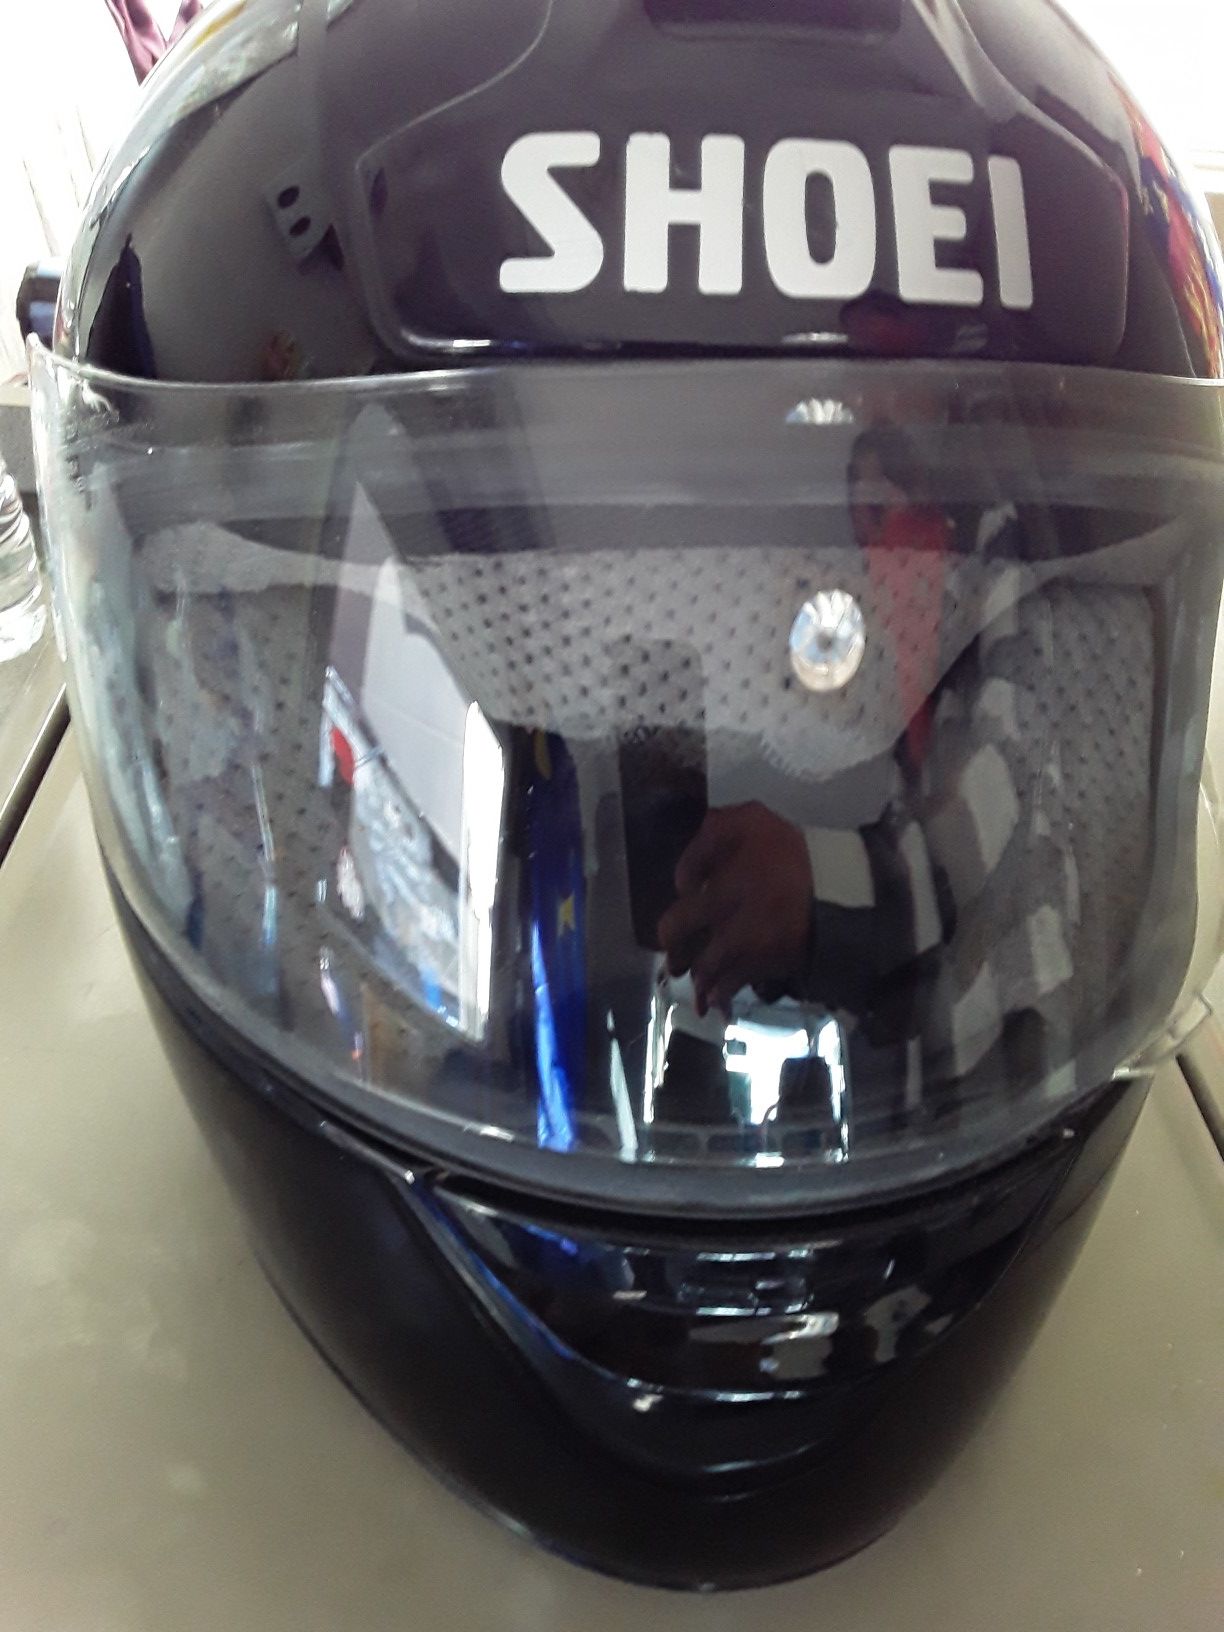 SHOEI Motorcycle helmet